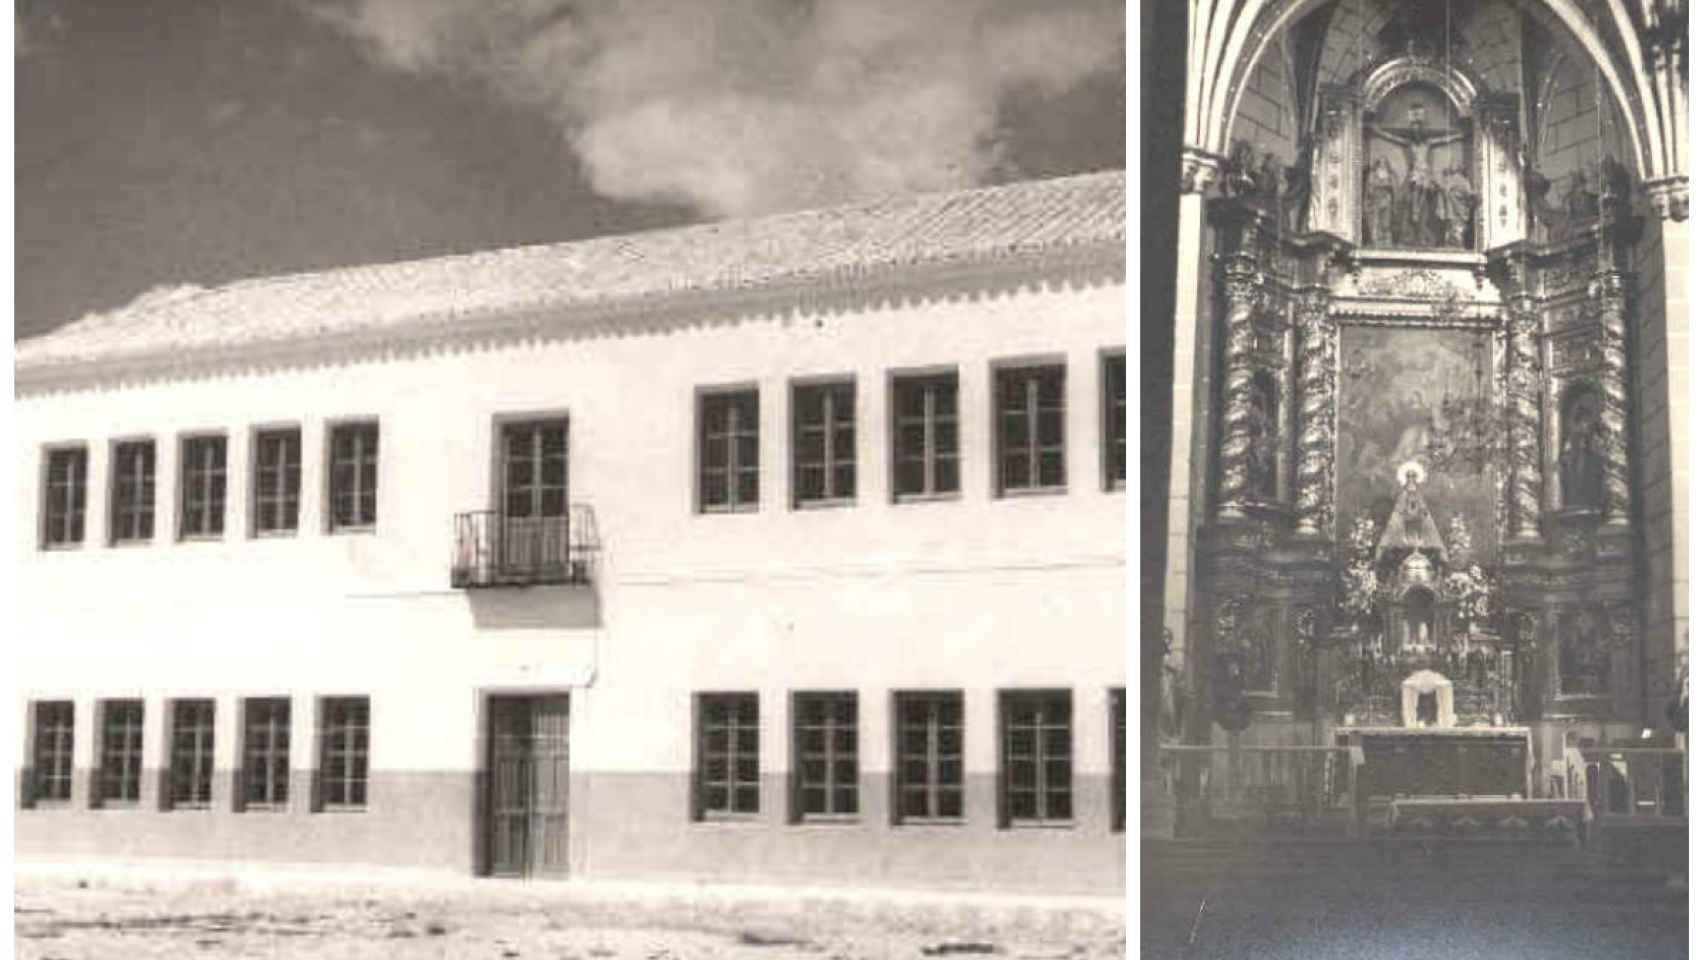 La fachada del colegio donde impartía clase Presentación y la iglesia donde se casó con Narciso en montaje de JALEOS.